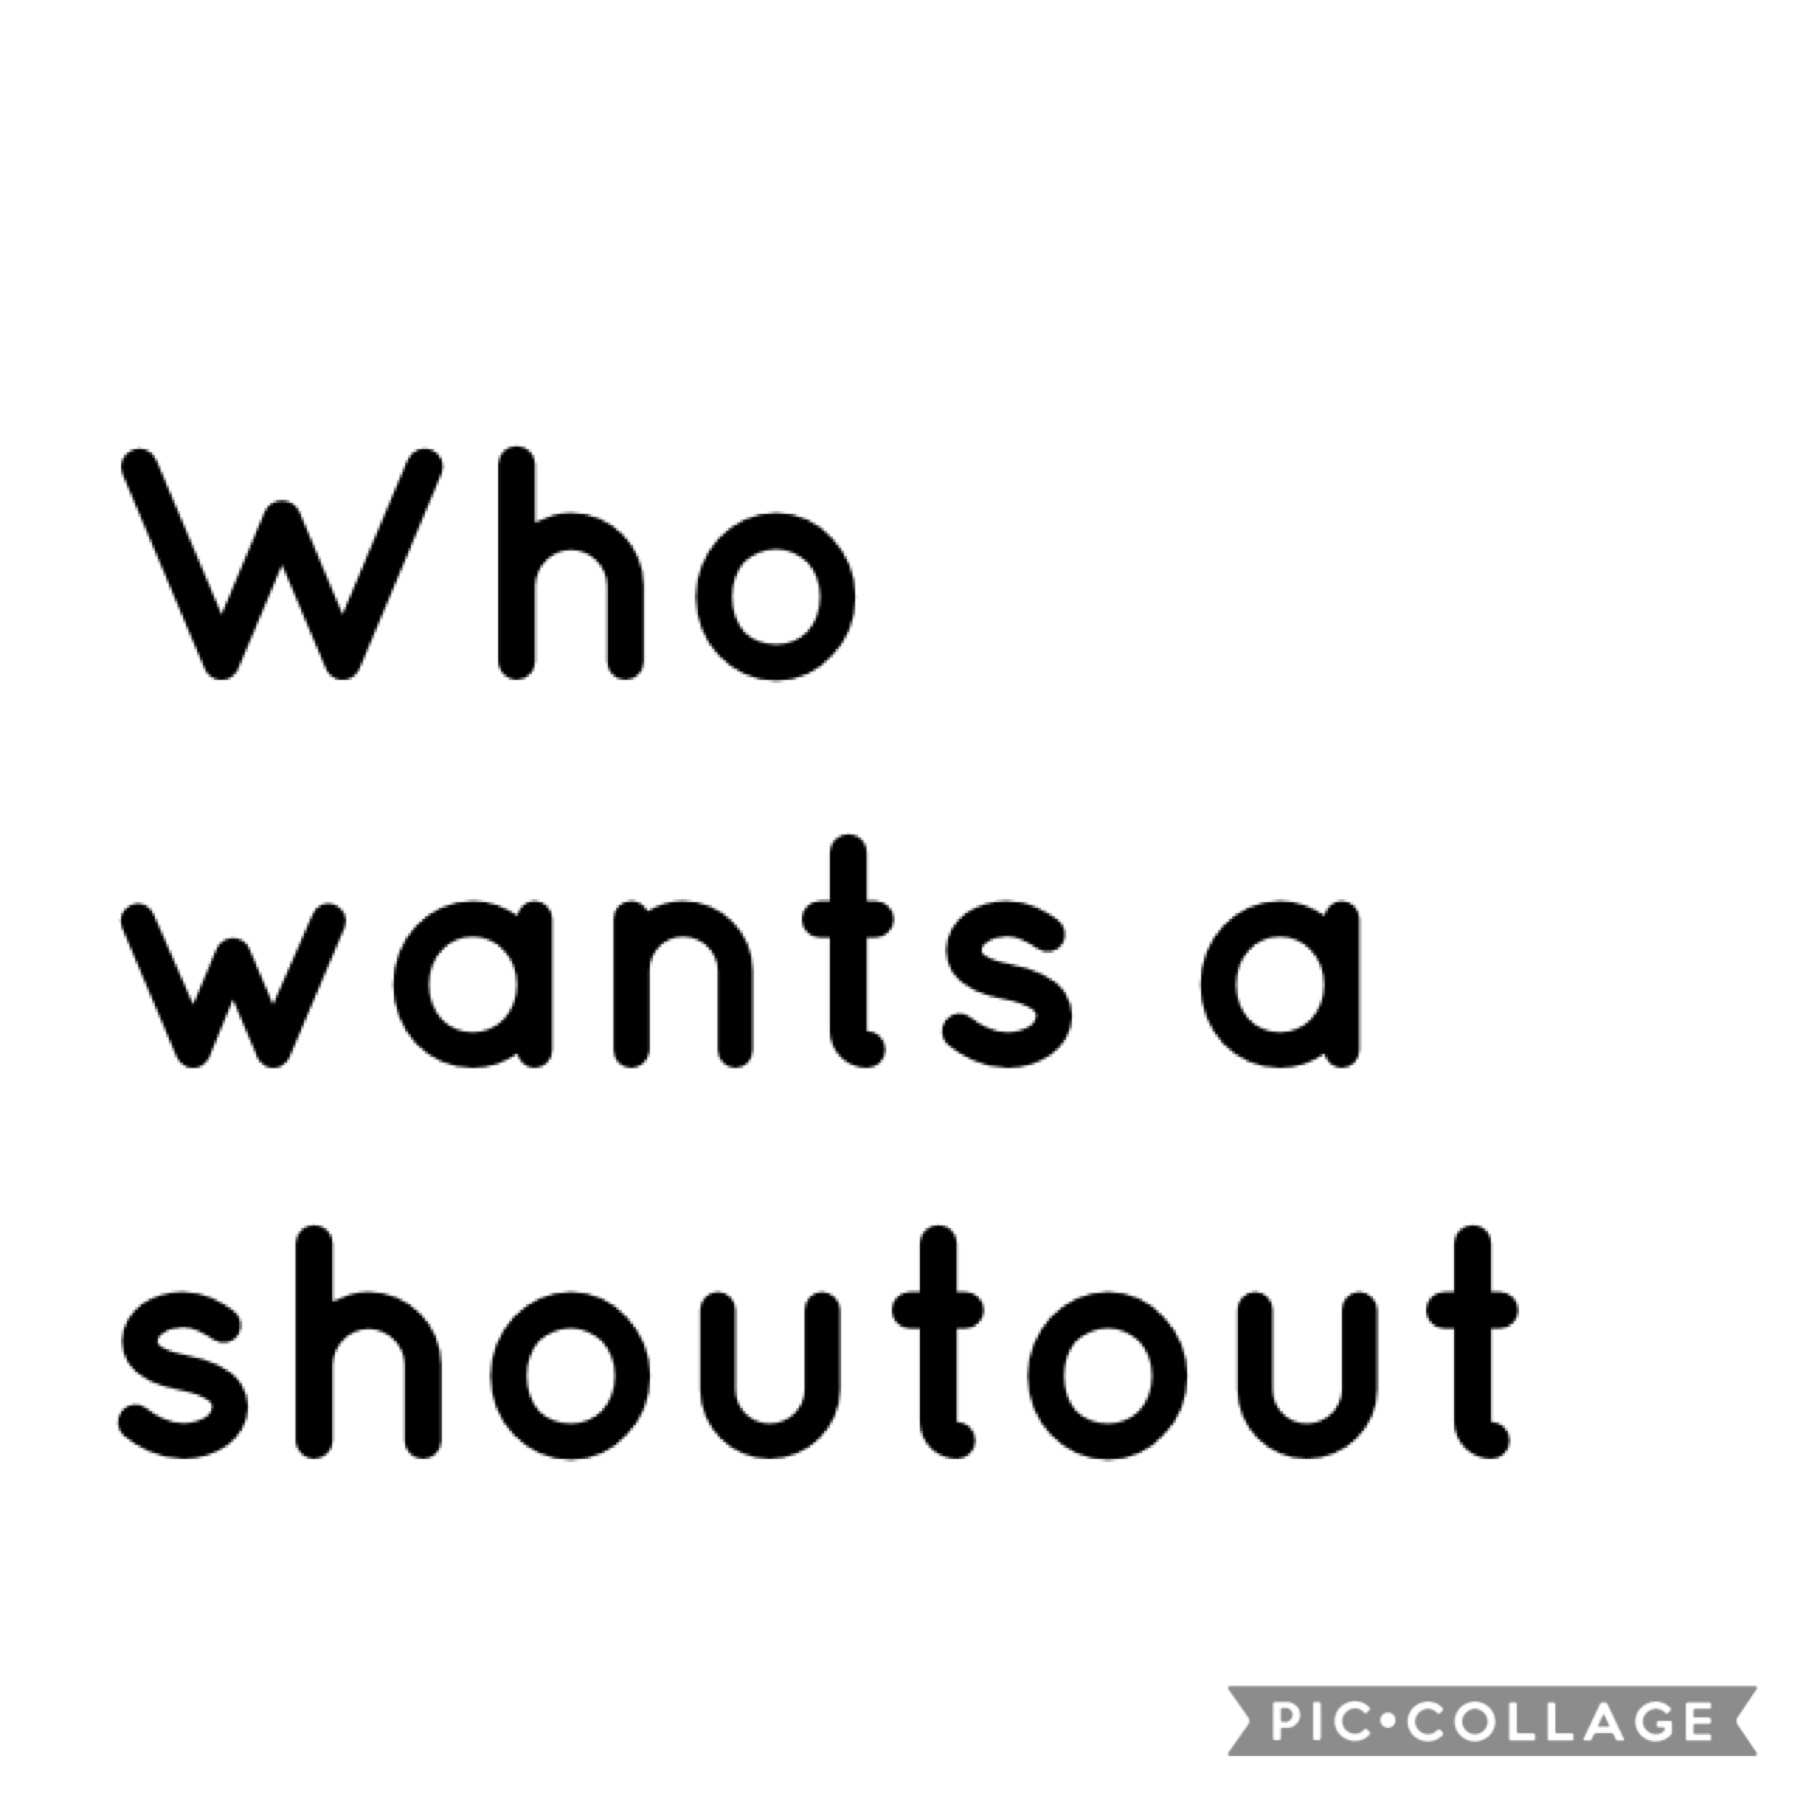 Shoutout 